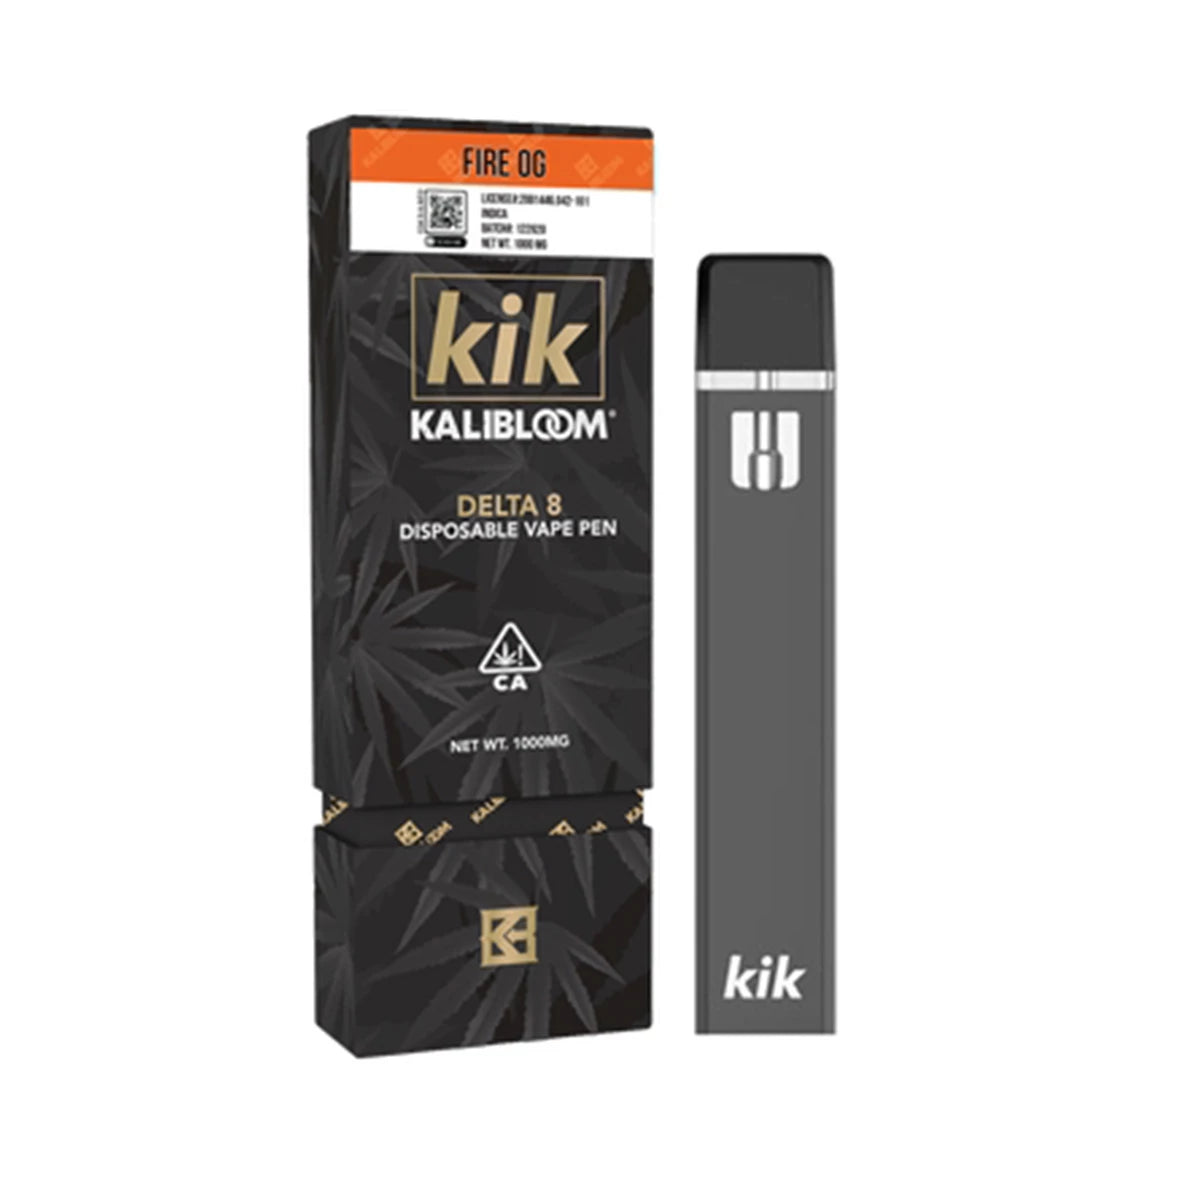 Kalibloom Kik Fire OG Delta 8 Disposable (1g)